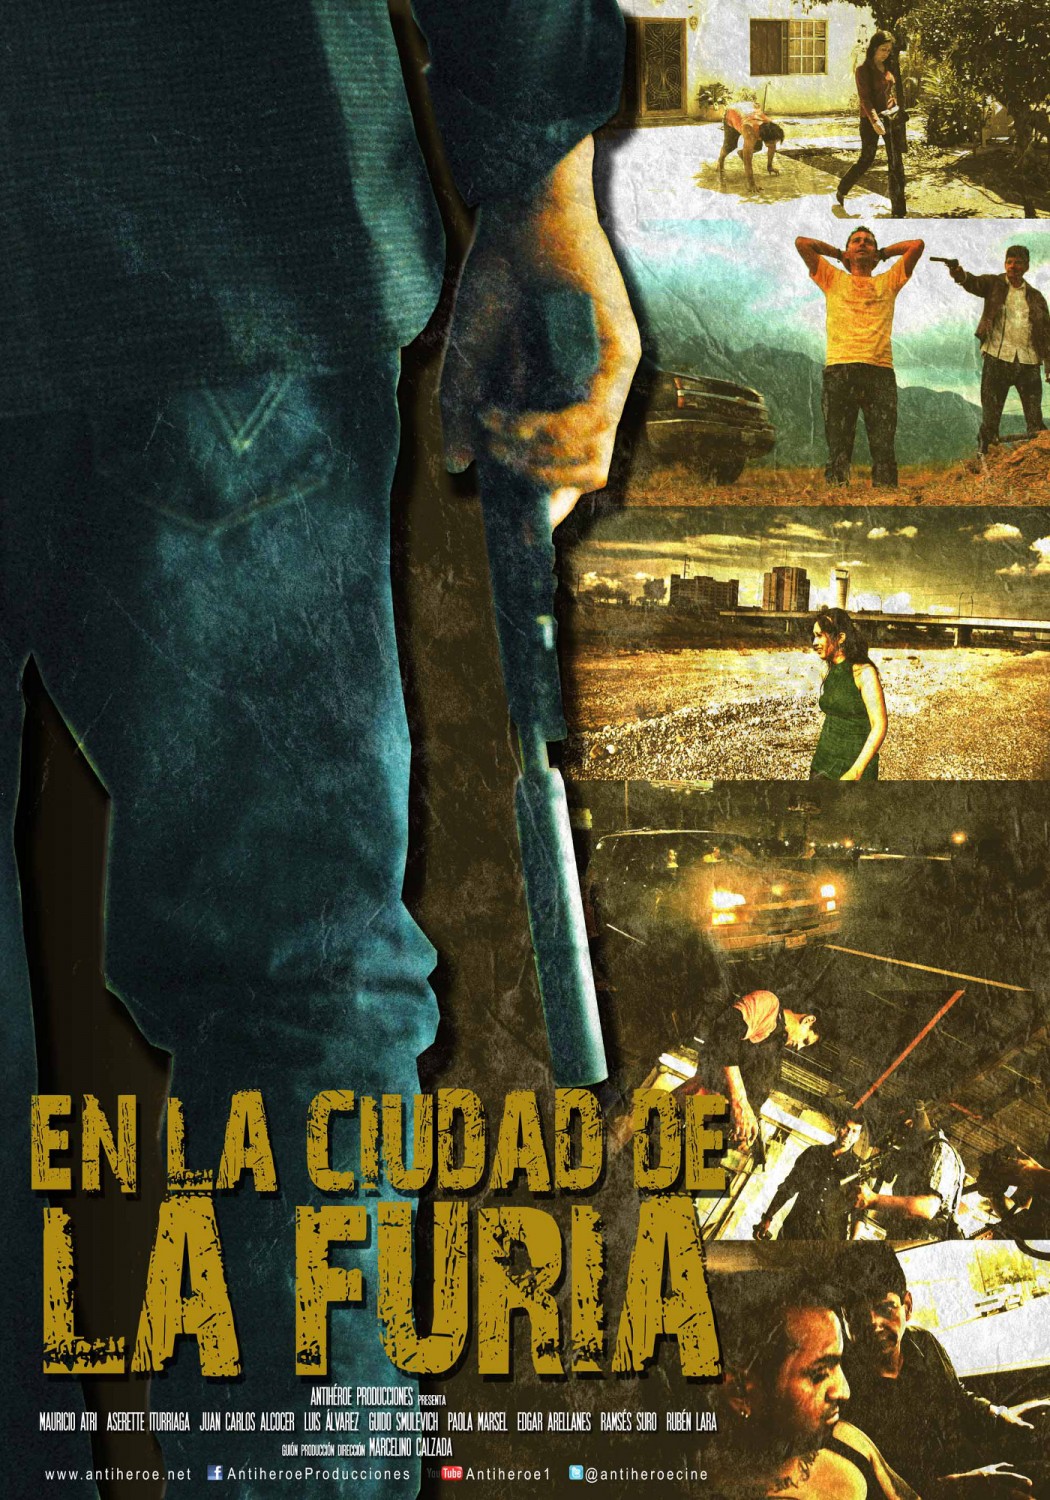 Extra Large Movie Poster Image for En la ciudad de la furia 